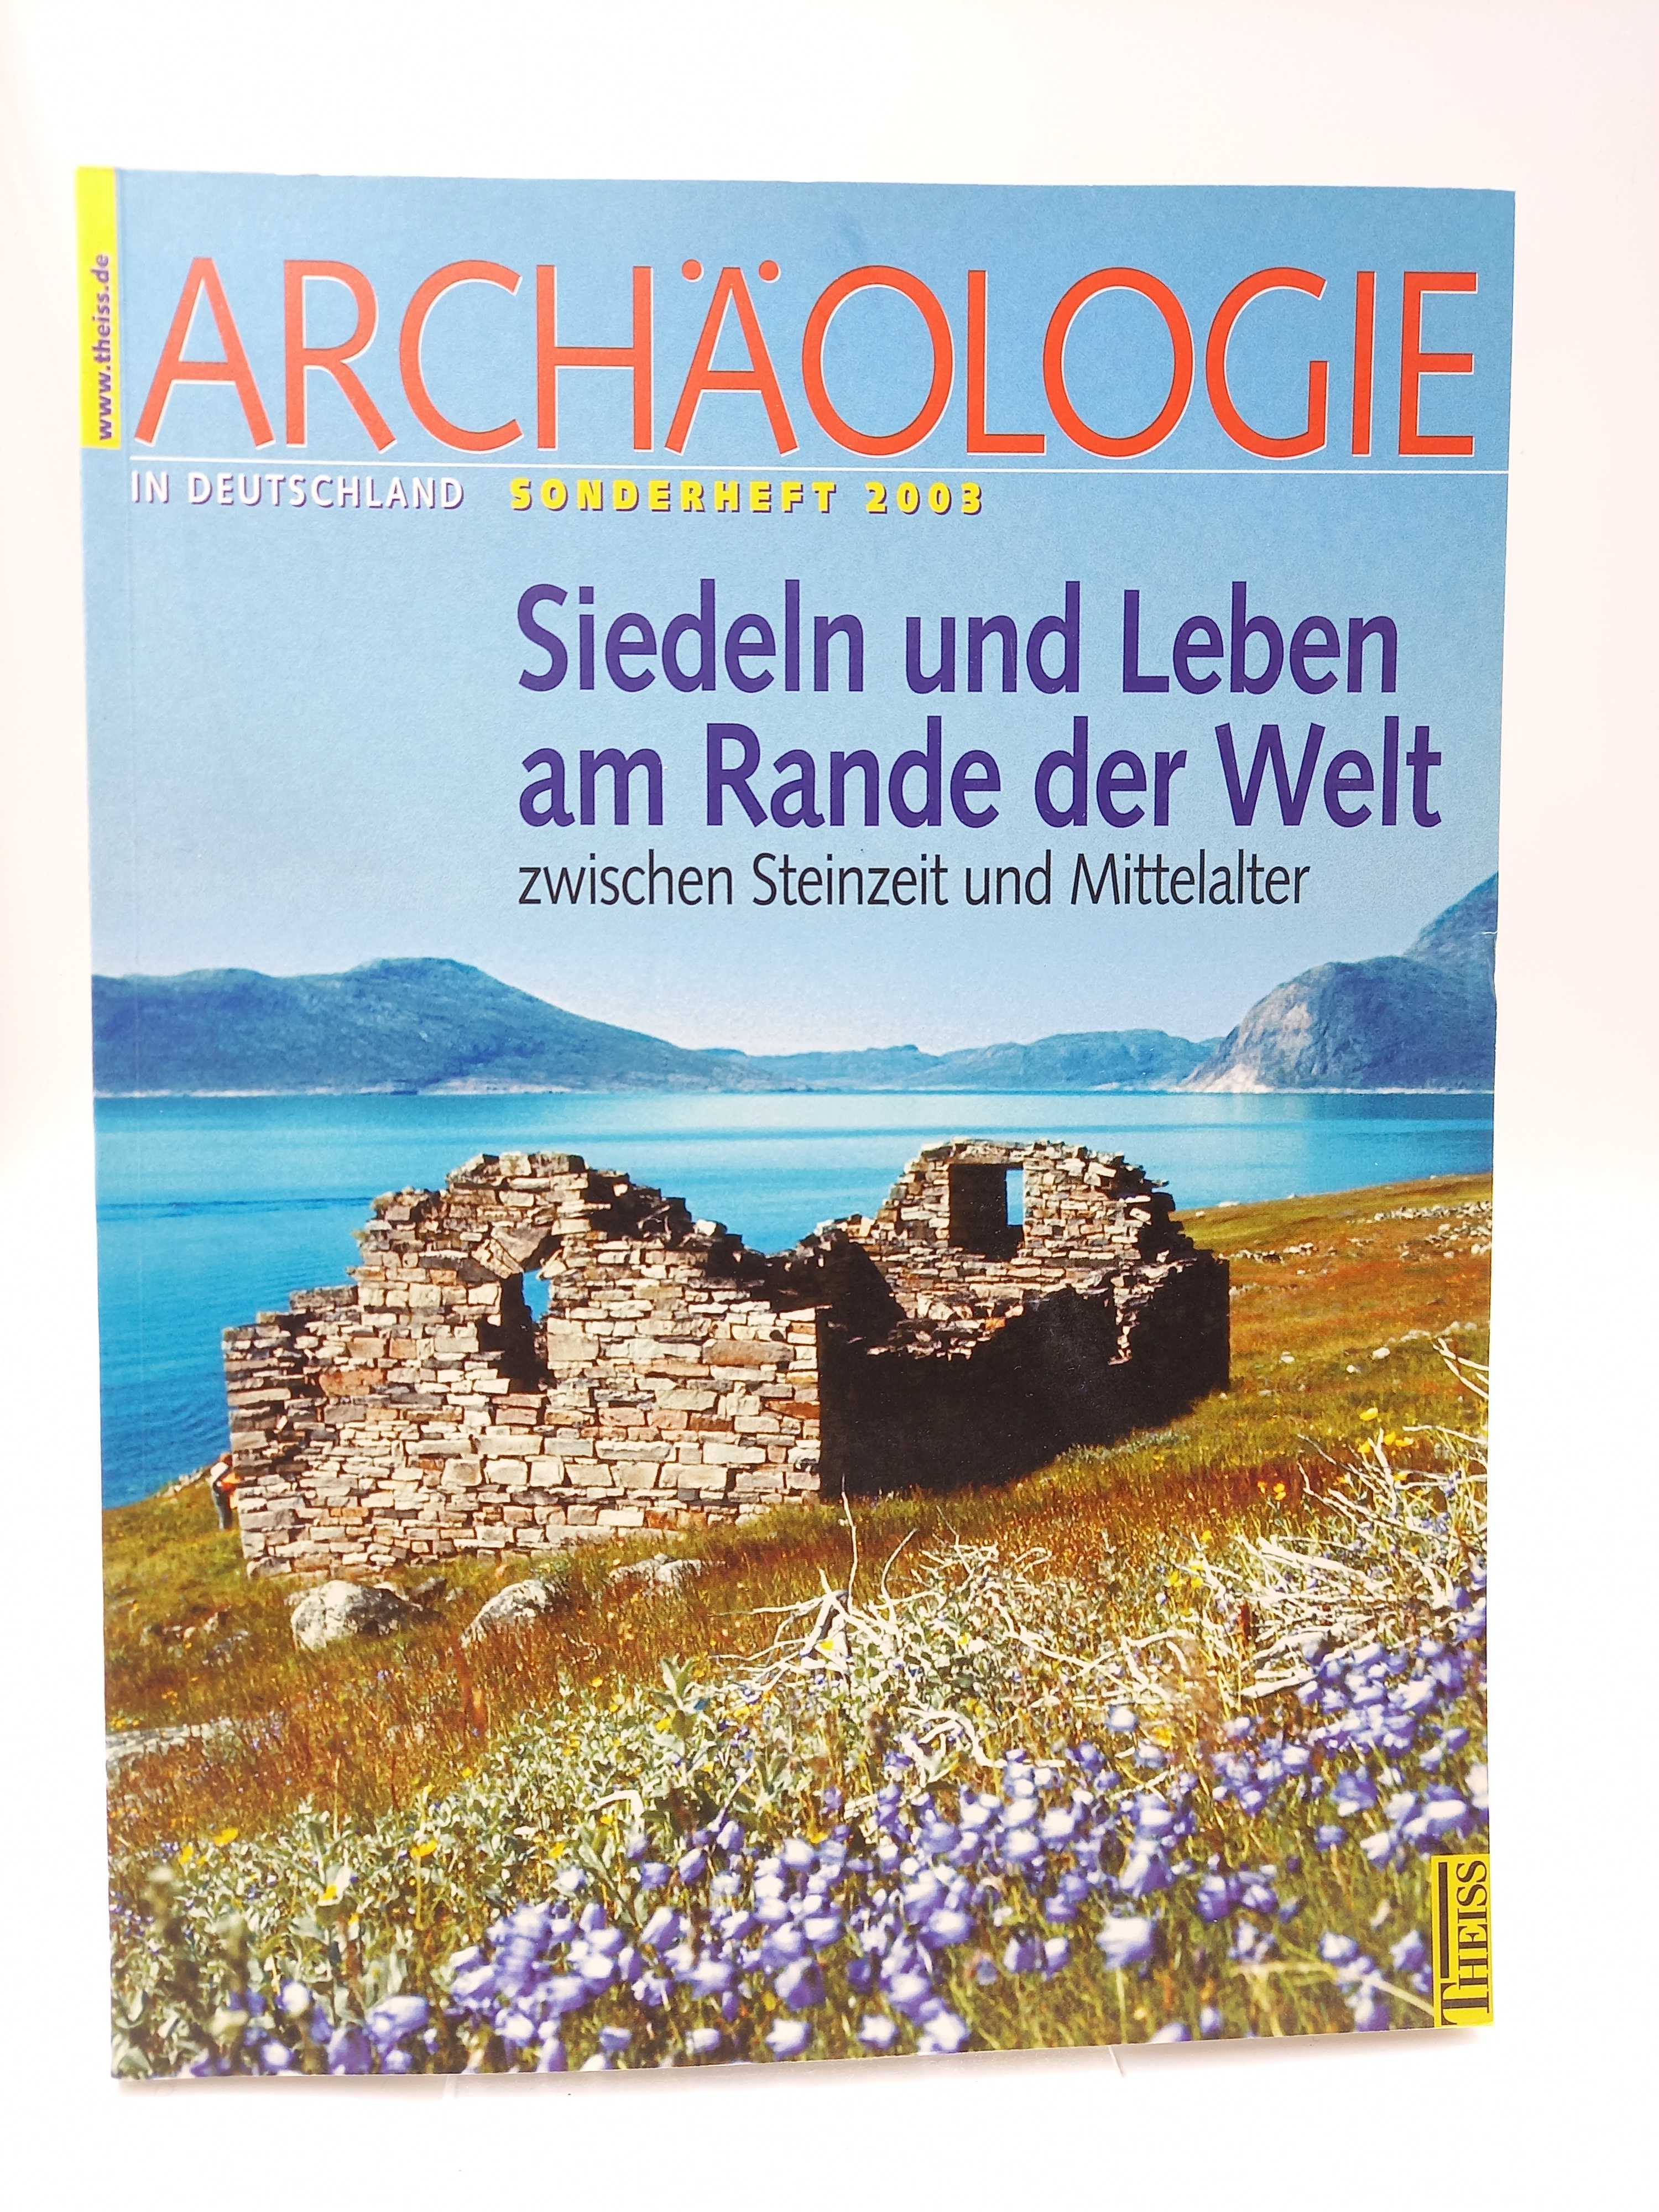 Siedeln und Leben am Rande der Welt zwischen Steinzeit und Mittelalter (Archäologie in Deutschland, Sonderheft 2003) - Meier, Dirk -